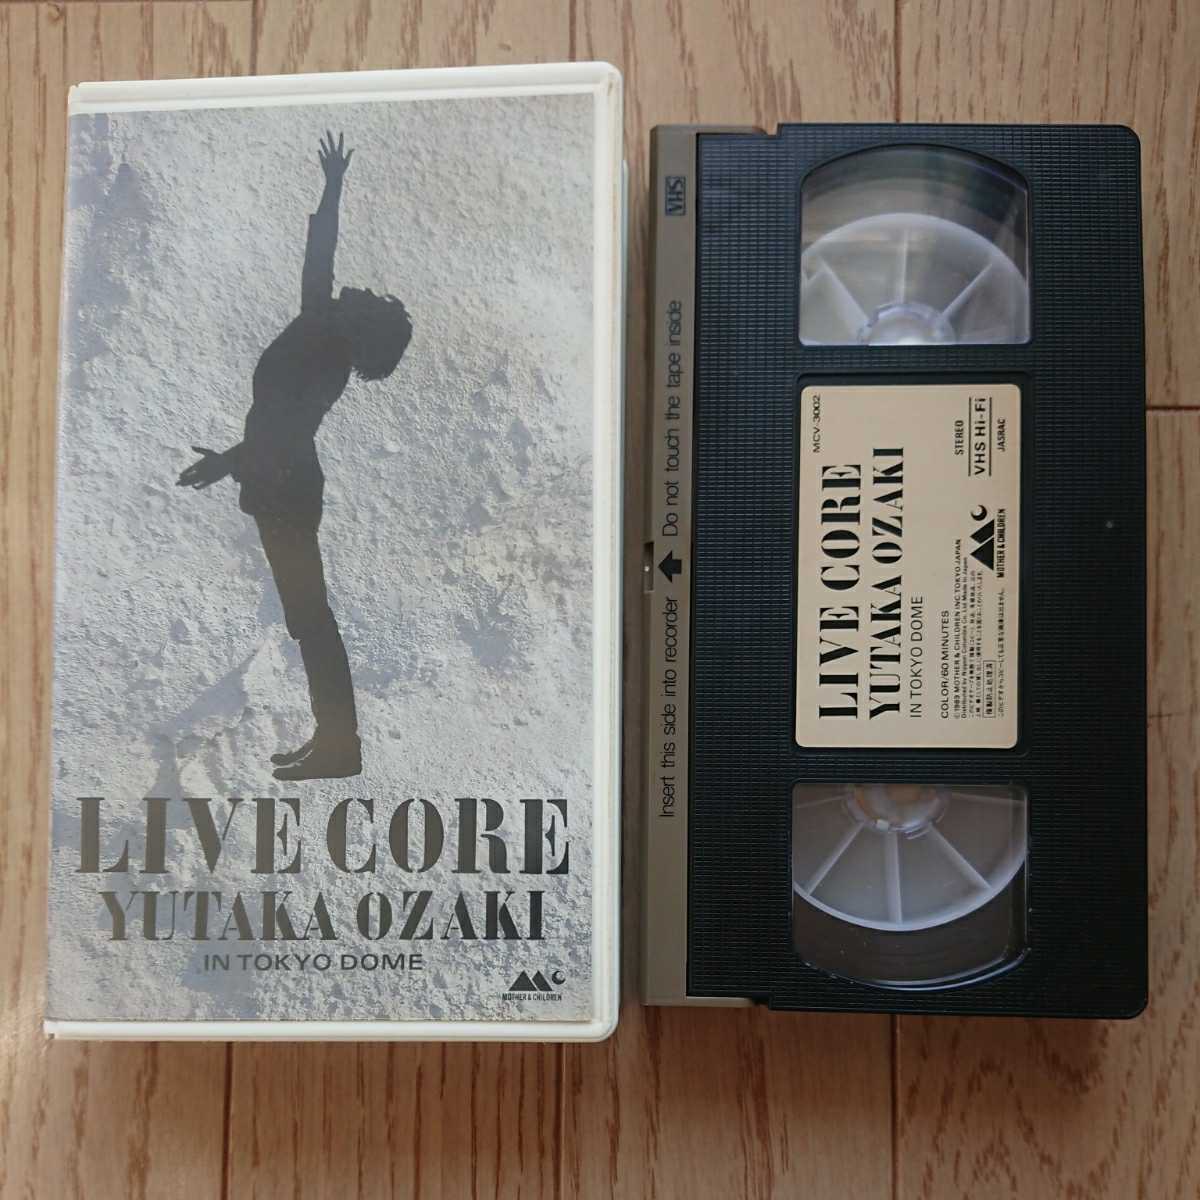 『LIVE CORE YUTAKA OZAKI IN TOKYODOME』中古ビデオ 尾崎豊_画像4